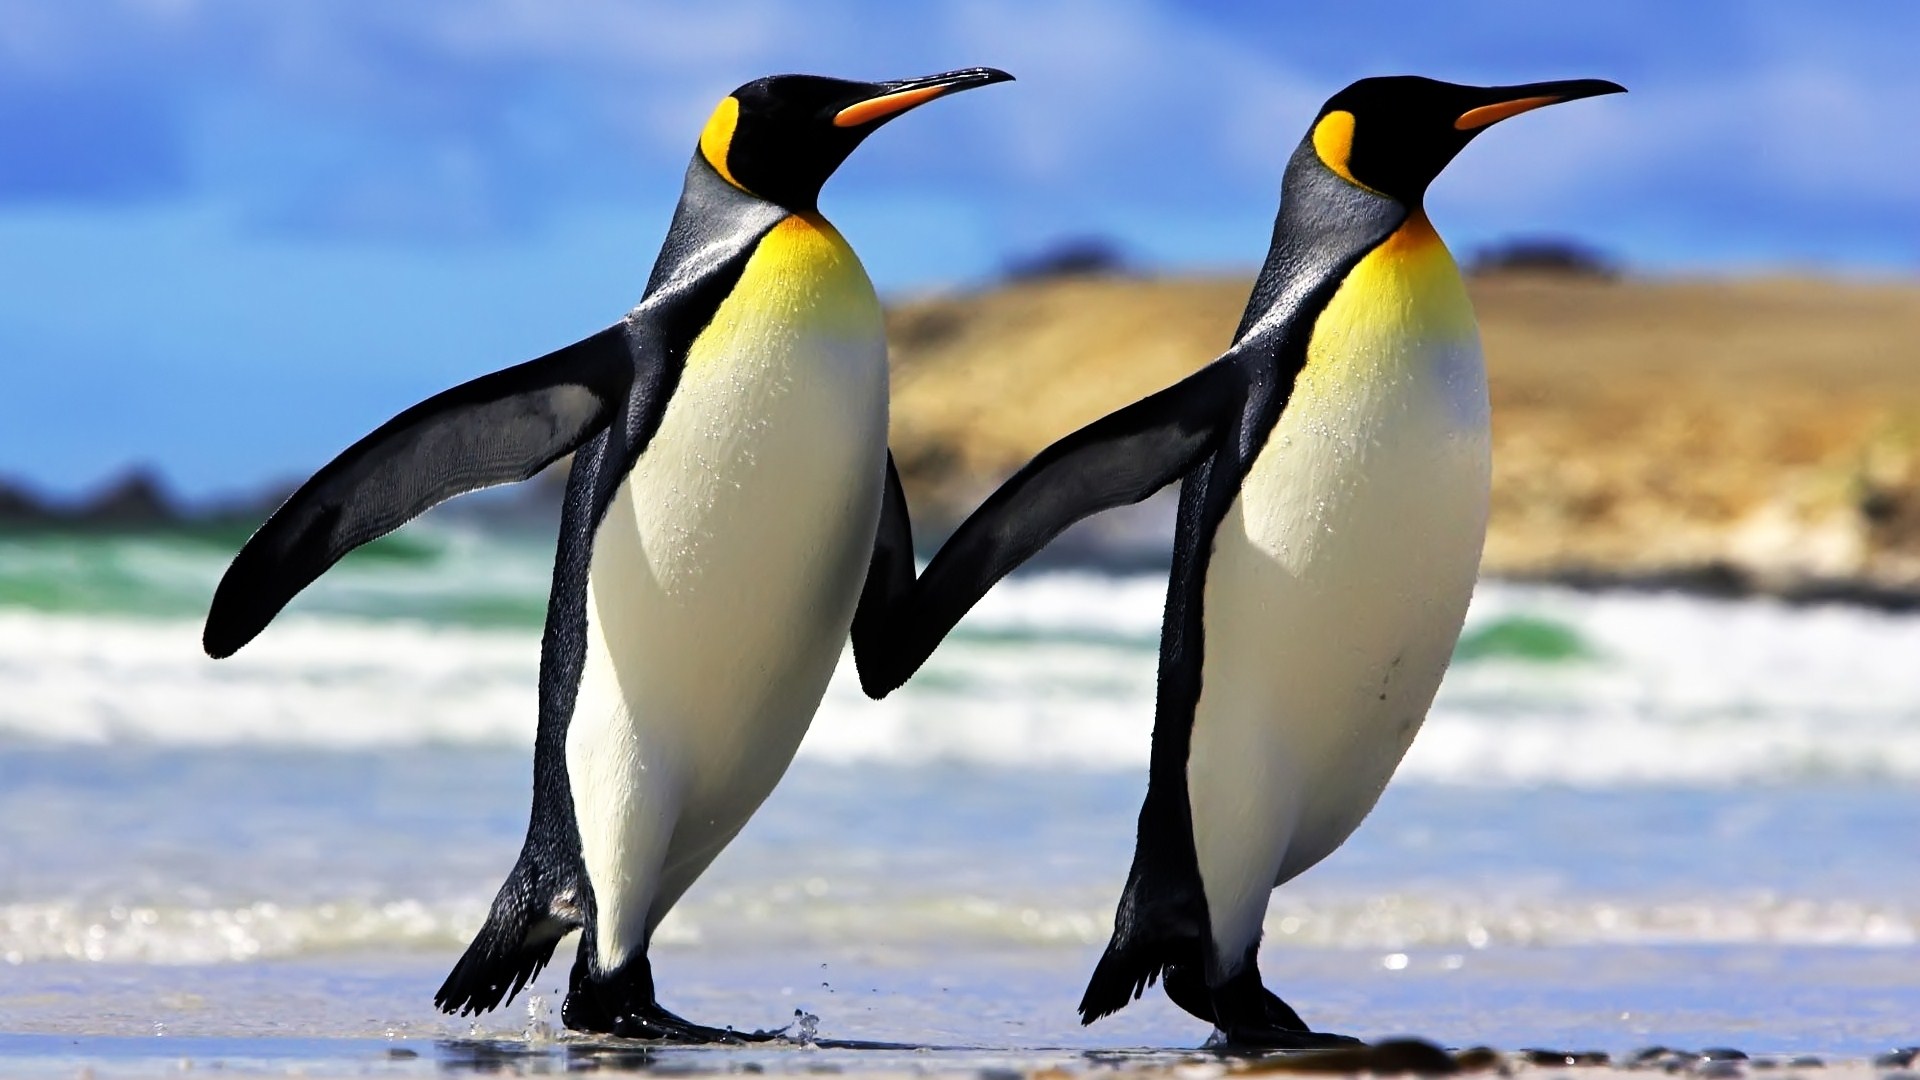 Hình nền Chim cánh cụt mùa đông Vợ chồng chim cánh cụt Mỏ Bắc Động vật Chim bay Động vật có xương sống Vua chim cánh cụt 5600x4156 wallhaven 